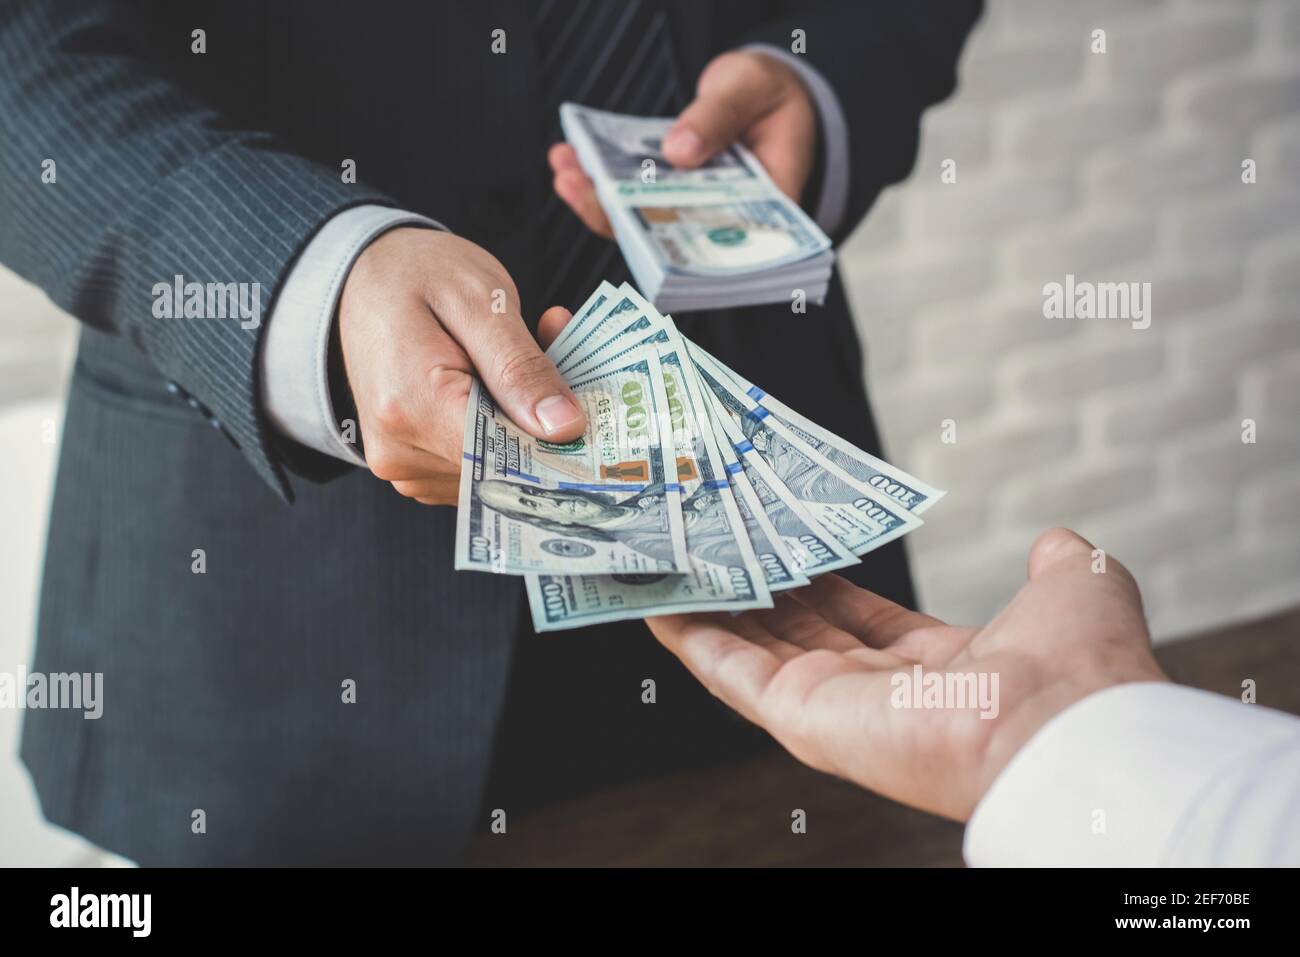 Homme d'affaires donnant ou payant de l'argent à un homme, des billets en dollars américains - prêt, corruption et concepts financiers Banque D'Images